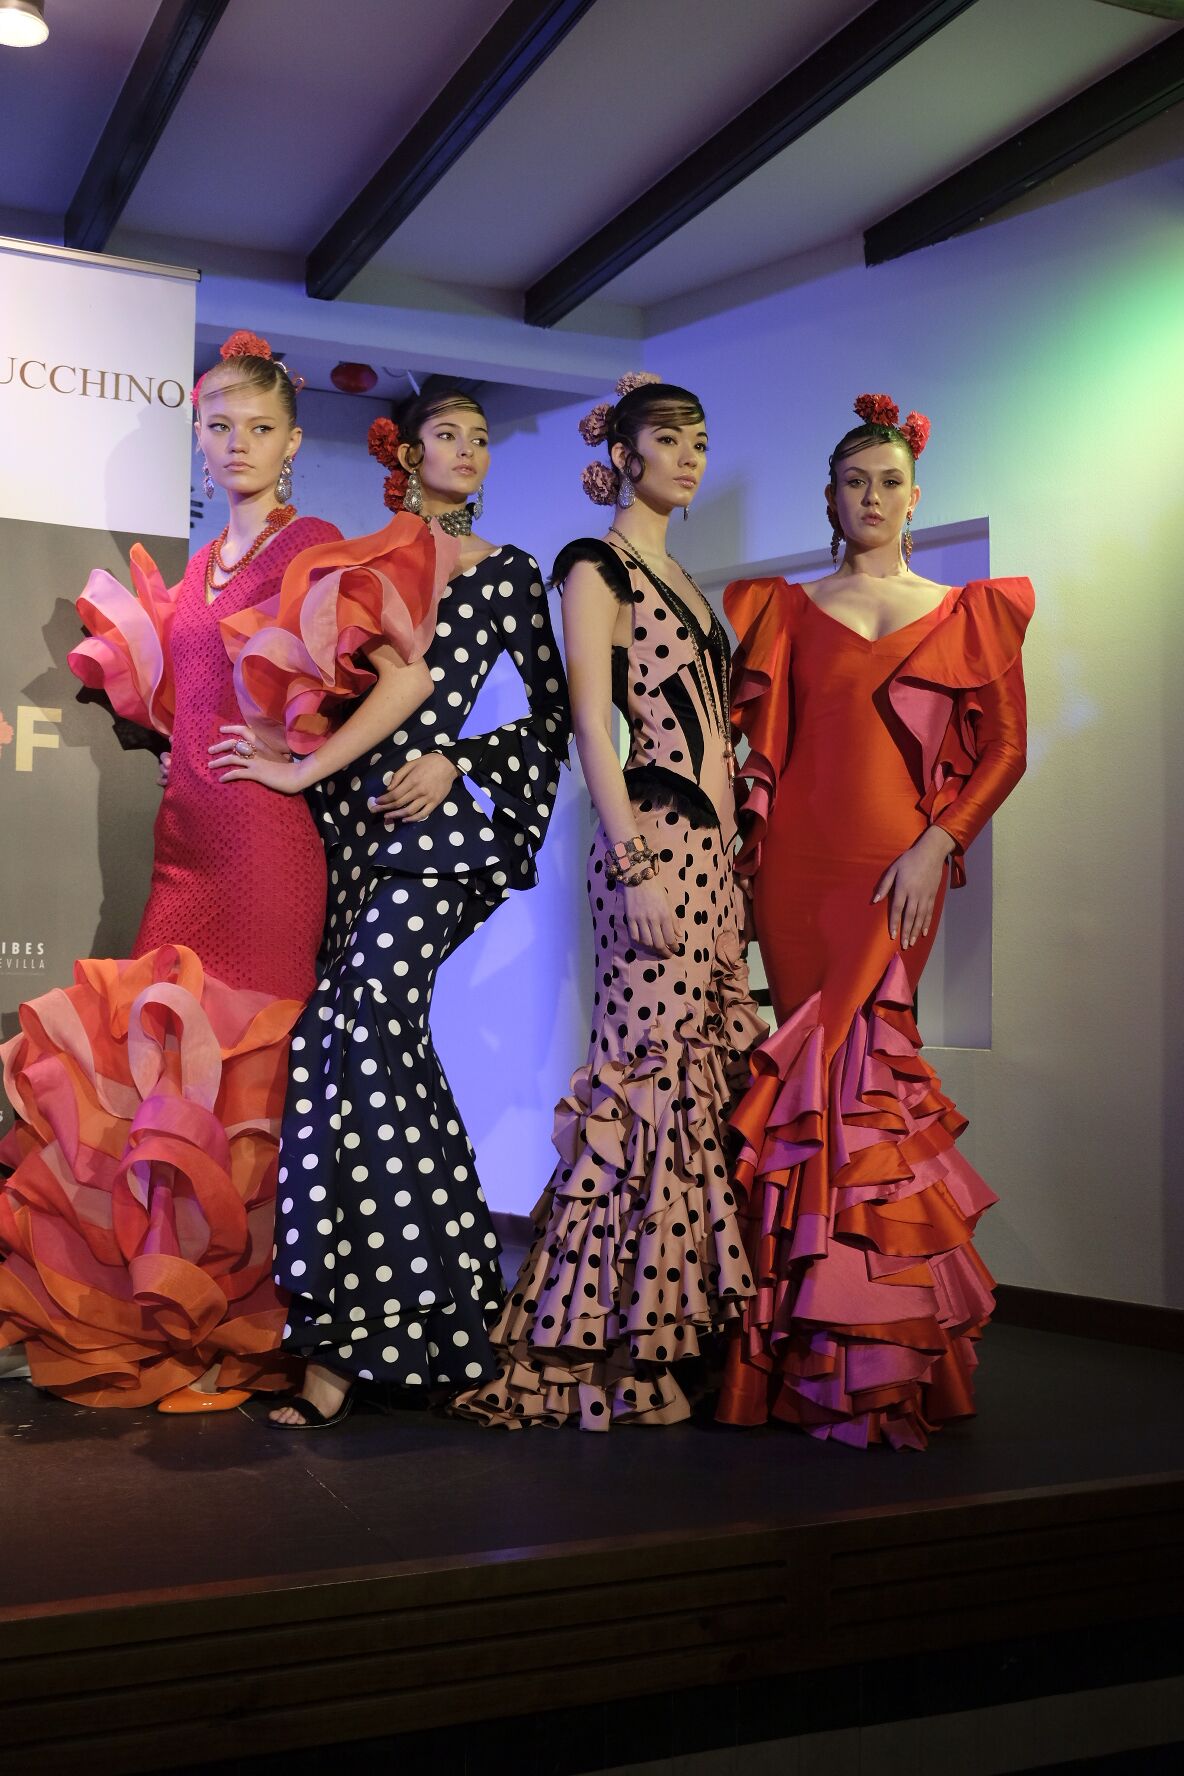 Victorio Luchinno traje flamenca